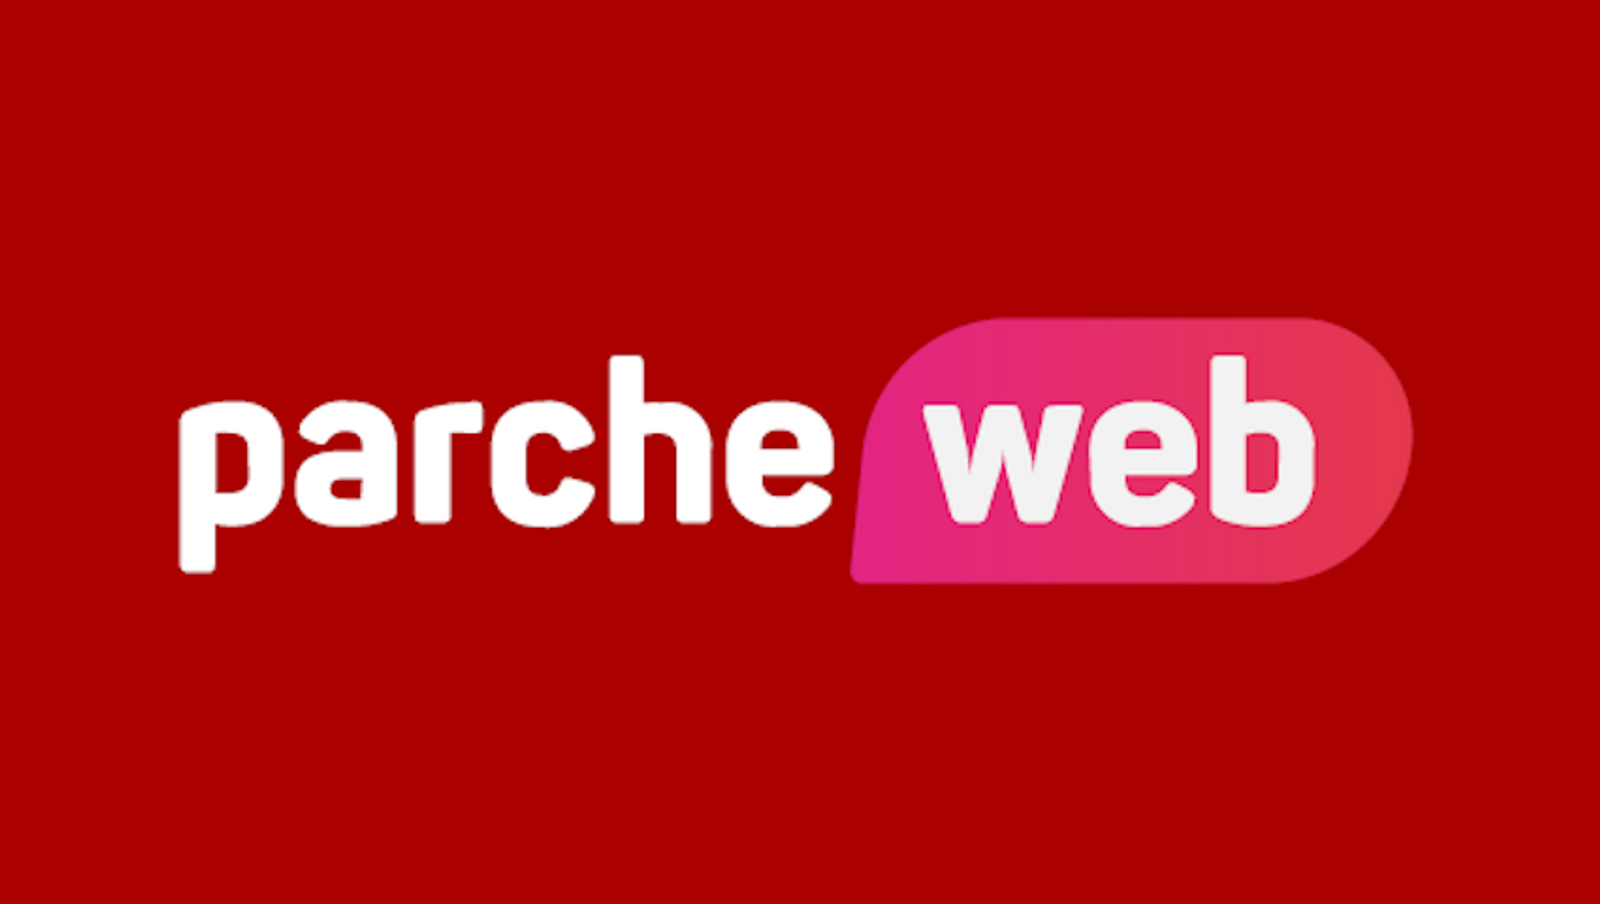 ParcheWeb.com Touts Spanish-Speaking Webcam Models Forum